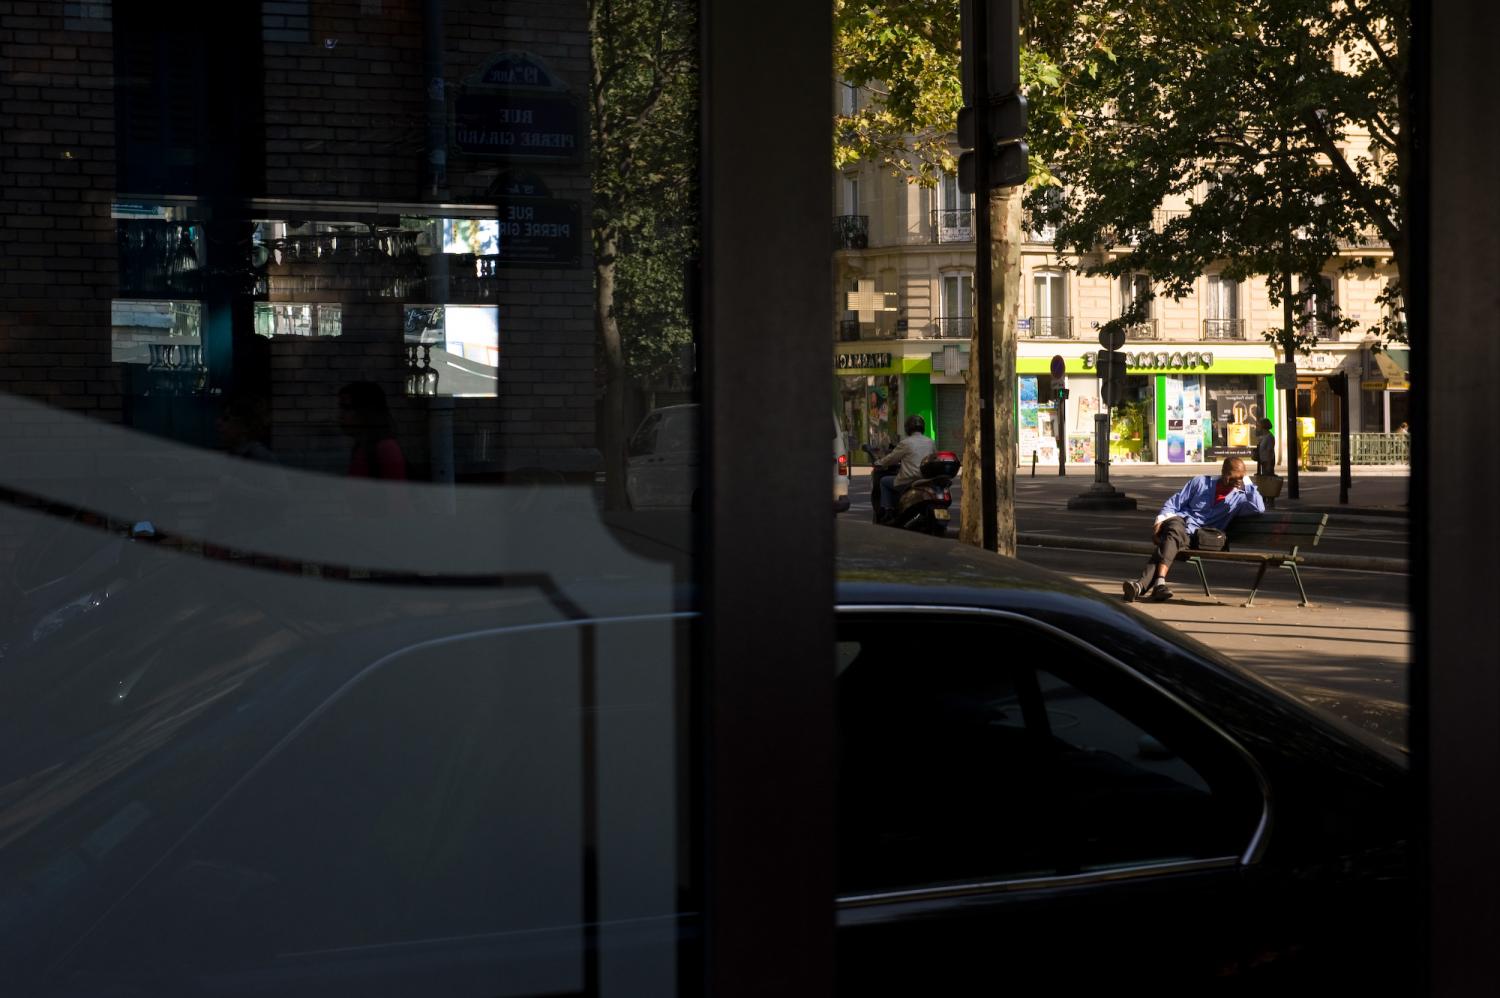 Reflet dans la devanture d'un restaurant : un homme assis sur le banc devant une des bouches de métro Laumière. Paris, juillet 2011.